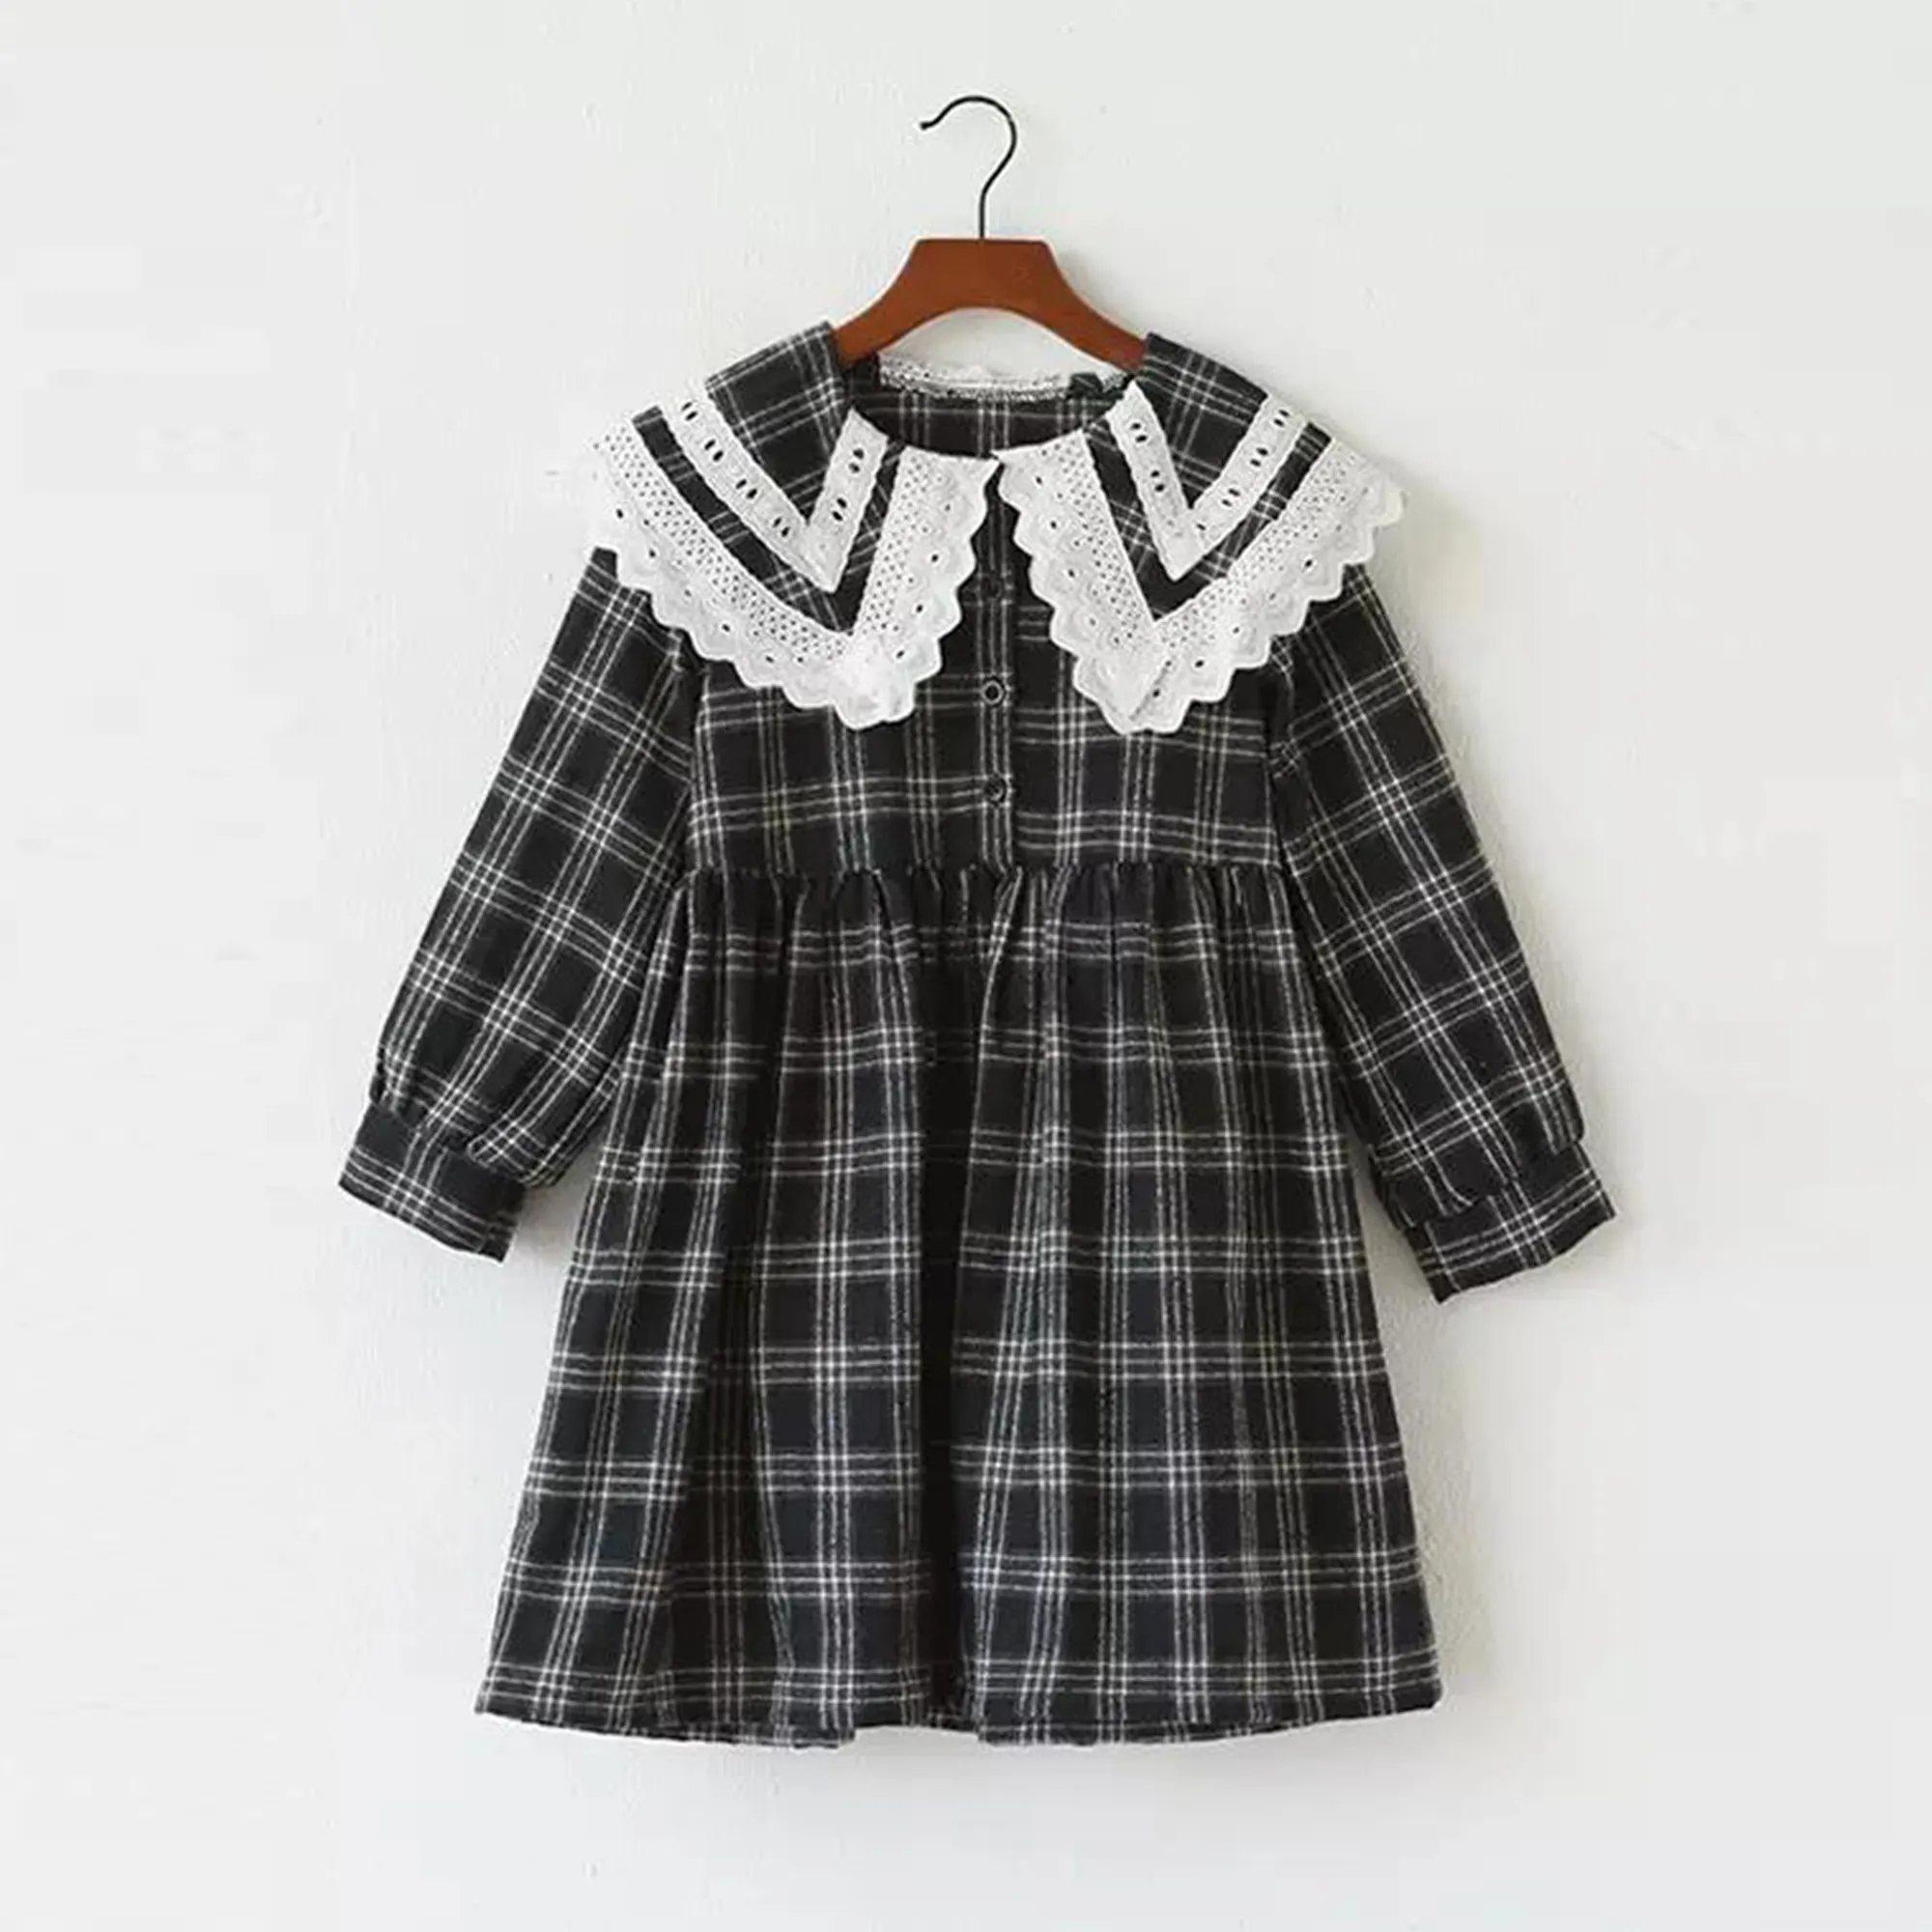 New Herbst Kinder Rock Check einlagigen Kragen Spitze Rand Kleid koreanischen Stil großen Mädchen Rock Vintage Baumwolle Kleid